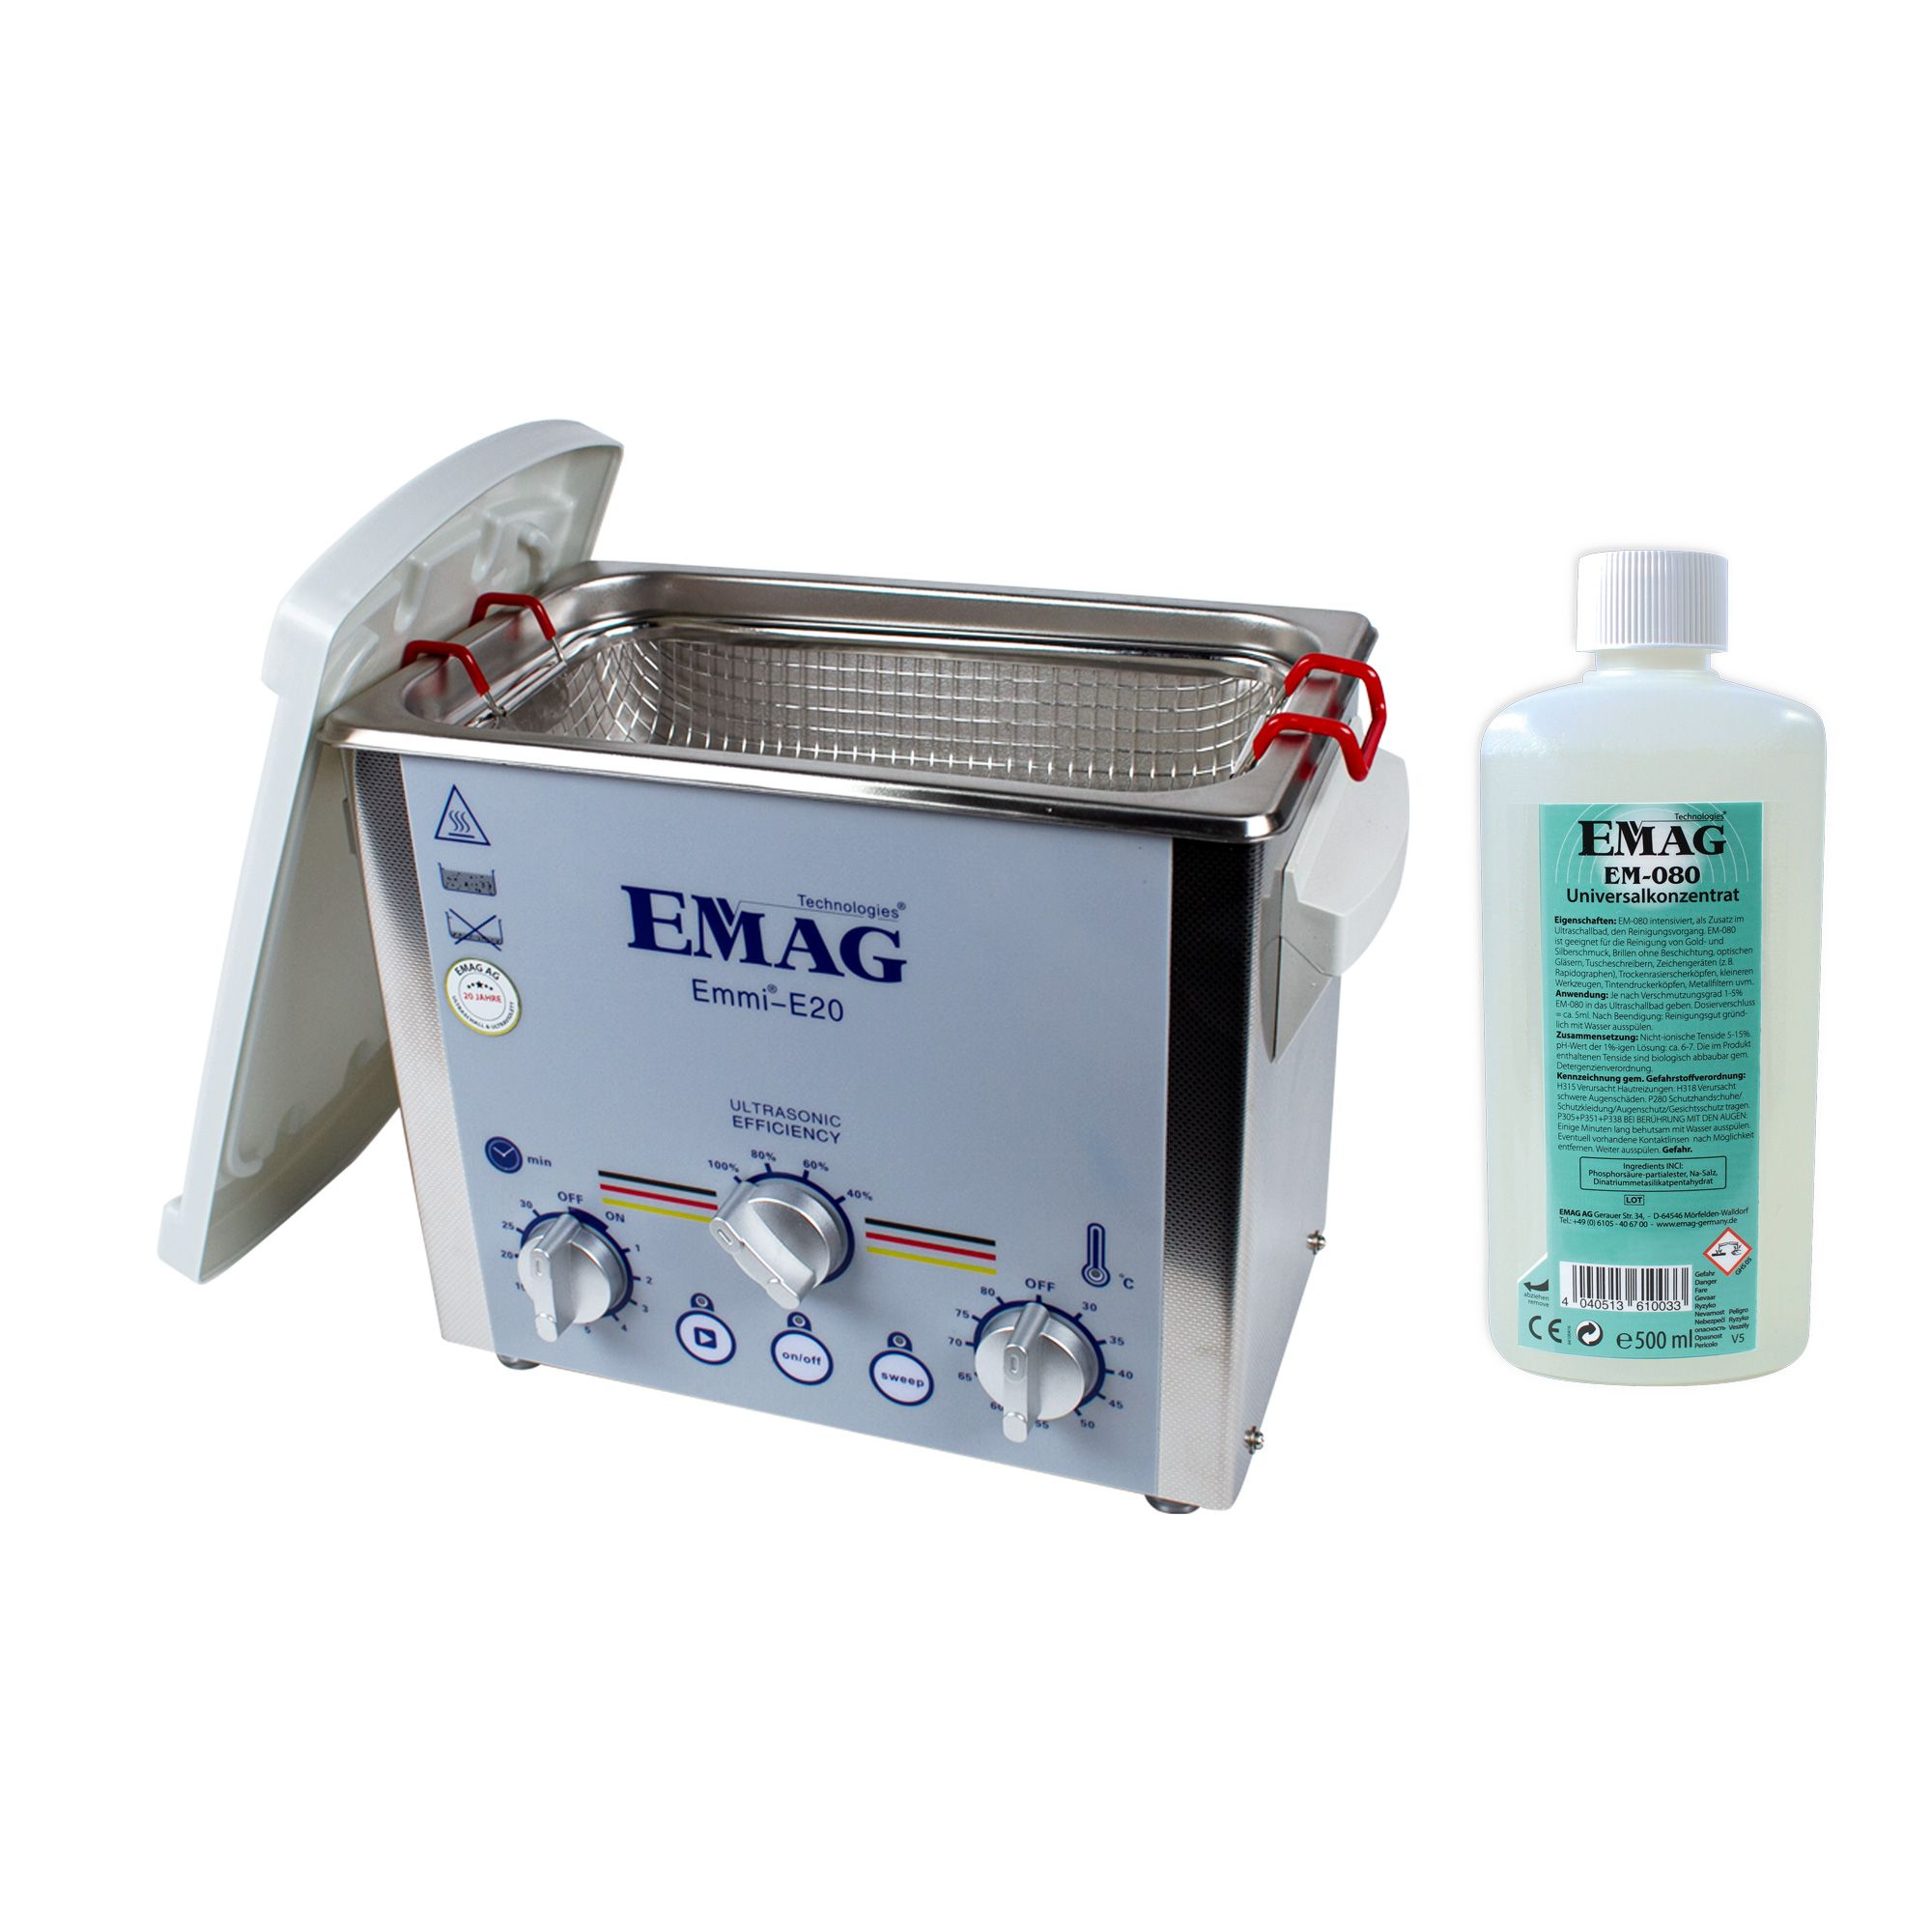 EMAG emmi® E20 Ultraschallreinigungsgerät Universal-Set Ultraschall